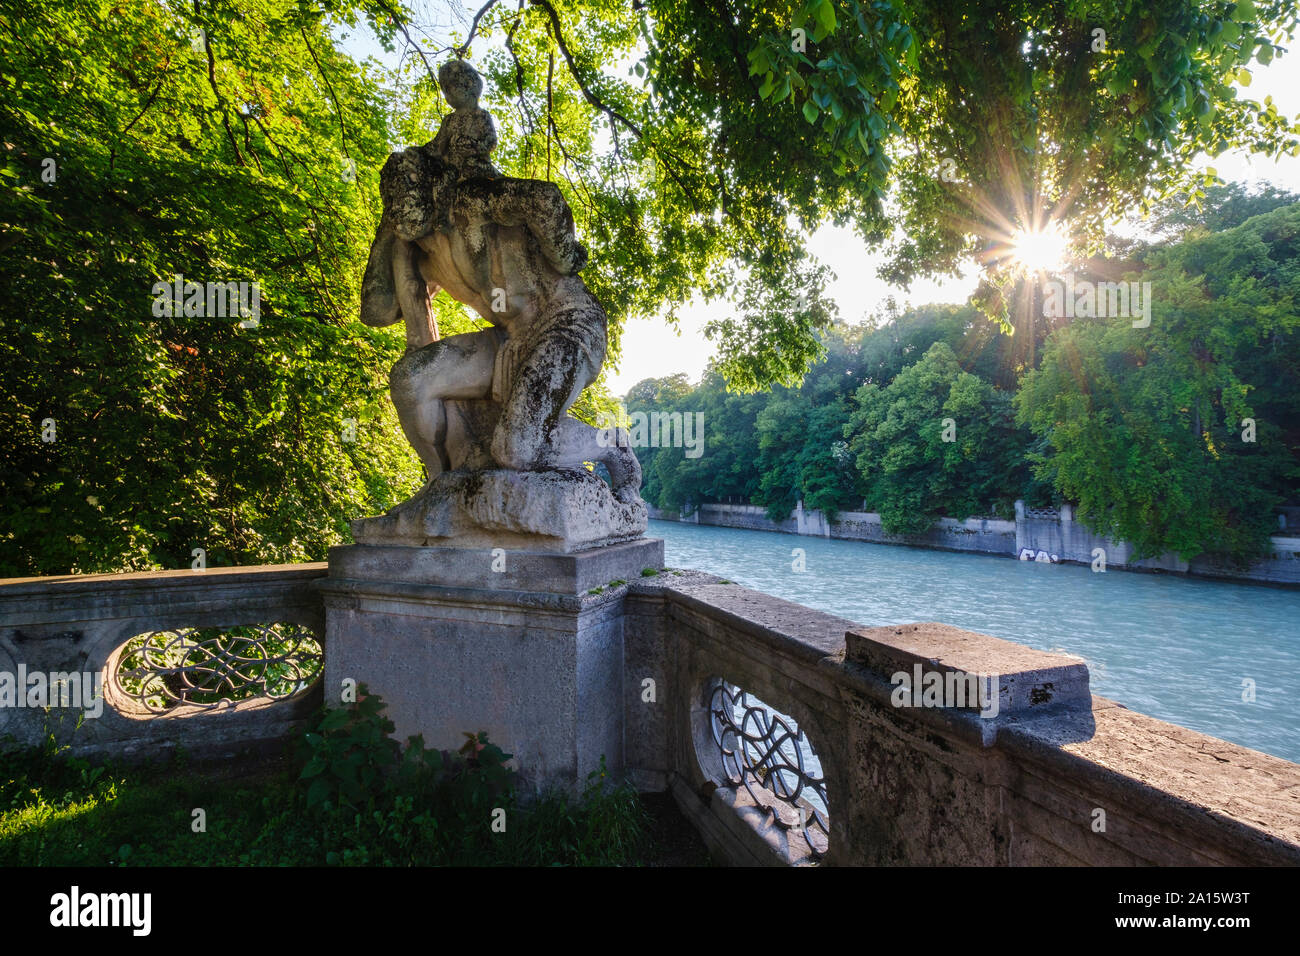 In Germania, in Baviera, Monaco, San Cristoforo statua circondata da alberi da fiume Isar al tramonto Foto Stock